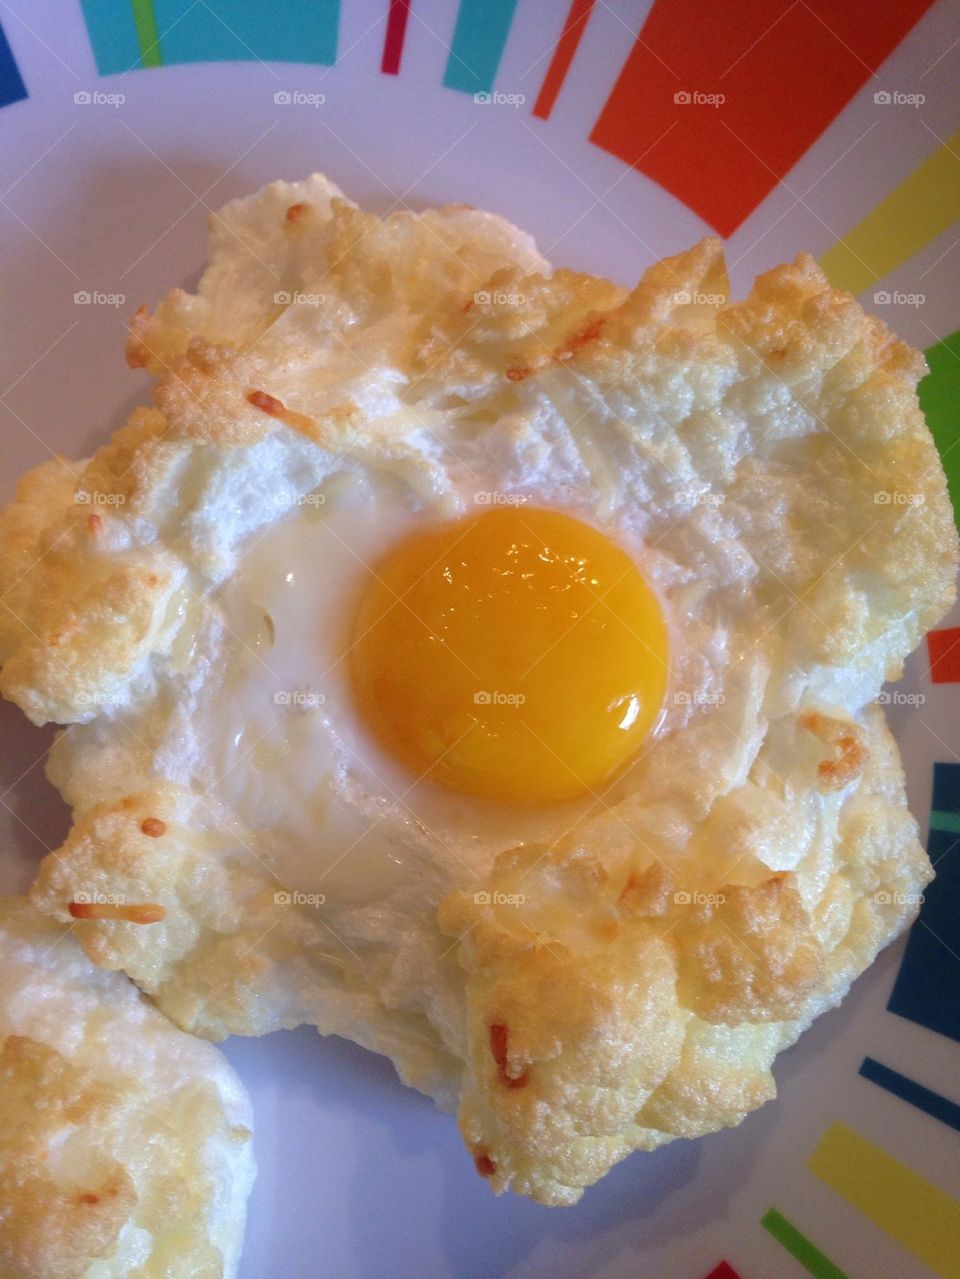 Egg in a cloud